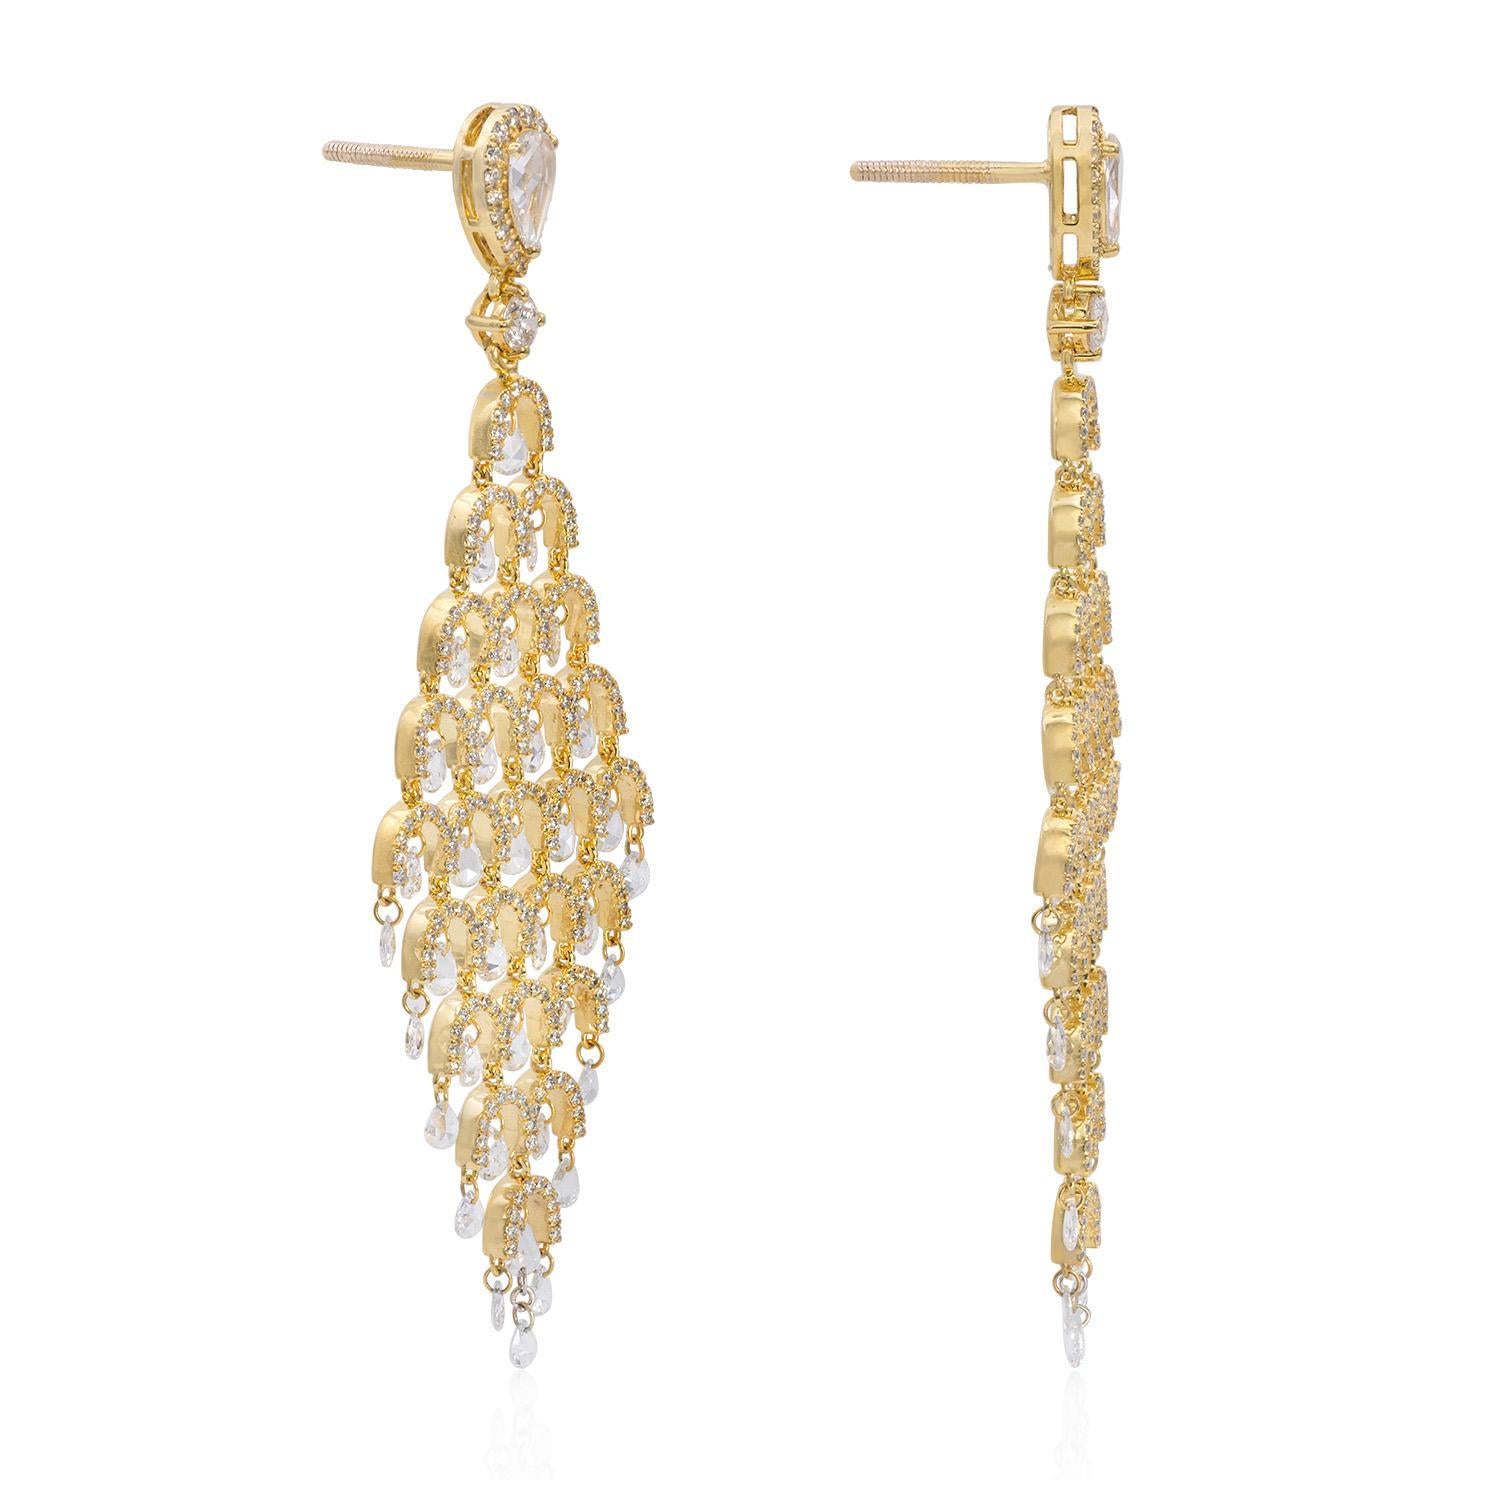 Unsere exquisiten Briolette- und Birnen-Diamantohrringe sind eine wahre Verkörperung von Eleganz und Raffinesse. Die mit äußerster Präzision und Liebe zum Detail gefertigten Ohrringe bestechen durch ihre zeitlose Schönheit und ihr modernes